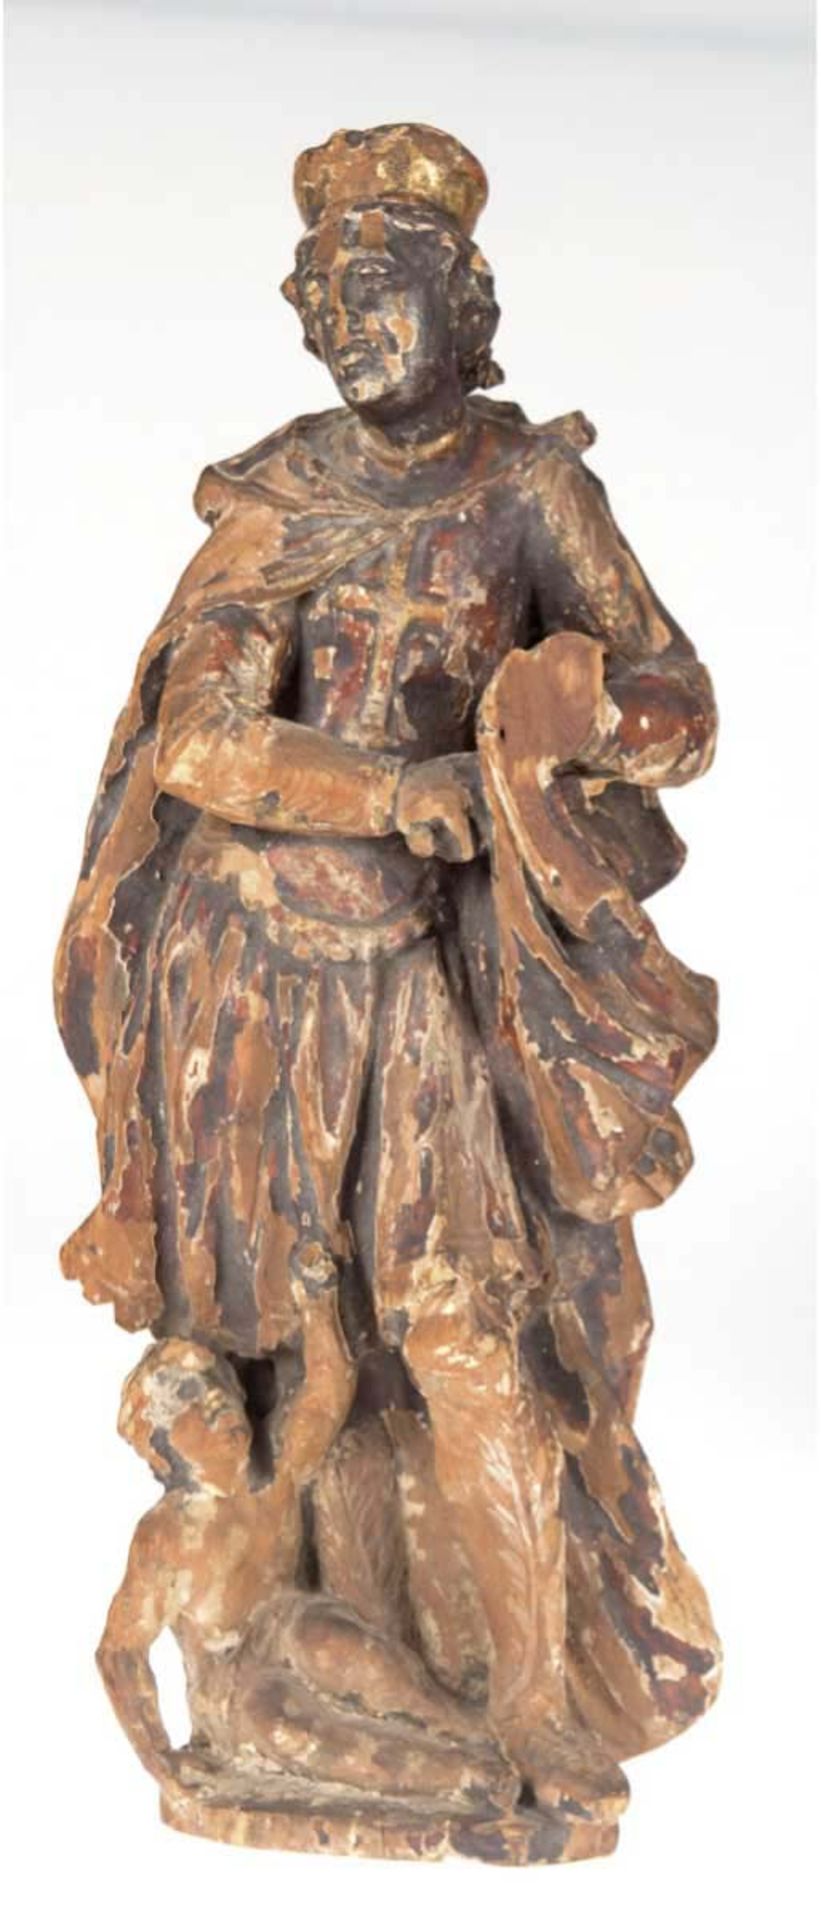 Holzfigur 18. Jh. "Der heilige Martin der seinen Mantel teilt", geschnitzt u. farbiggefasst, H. 53